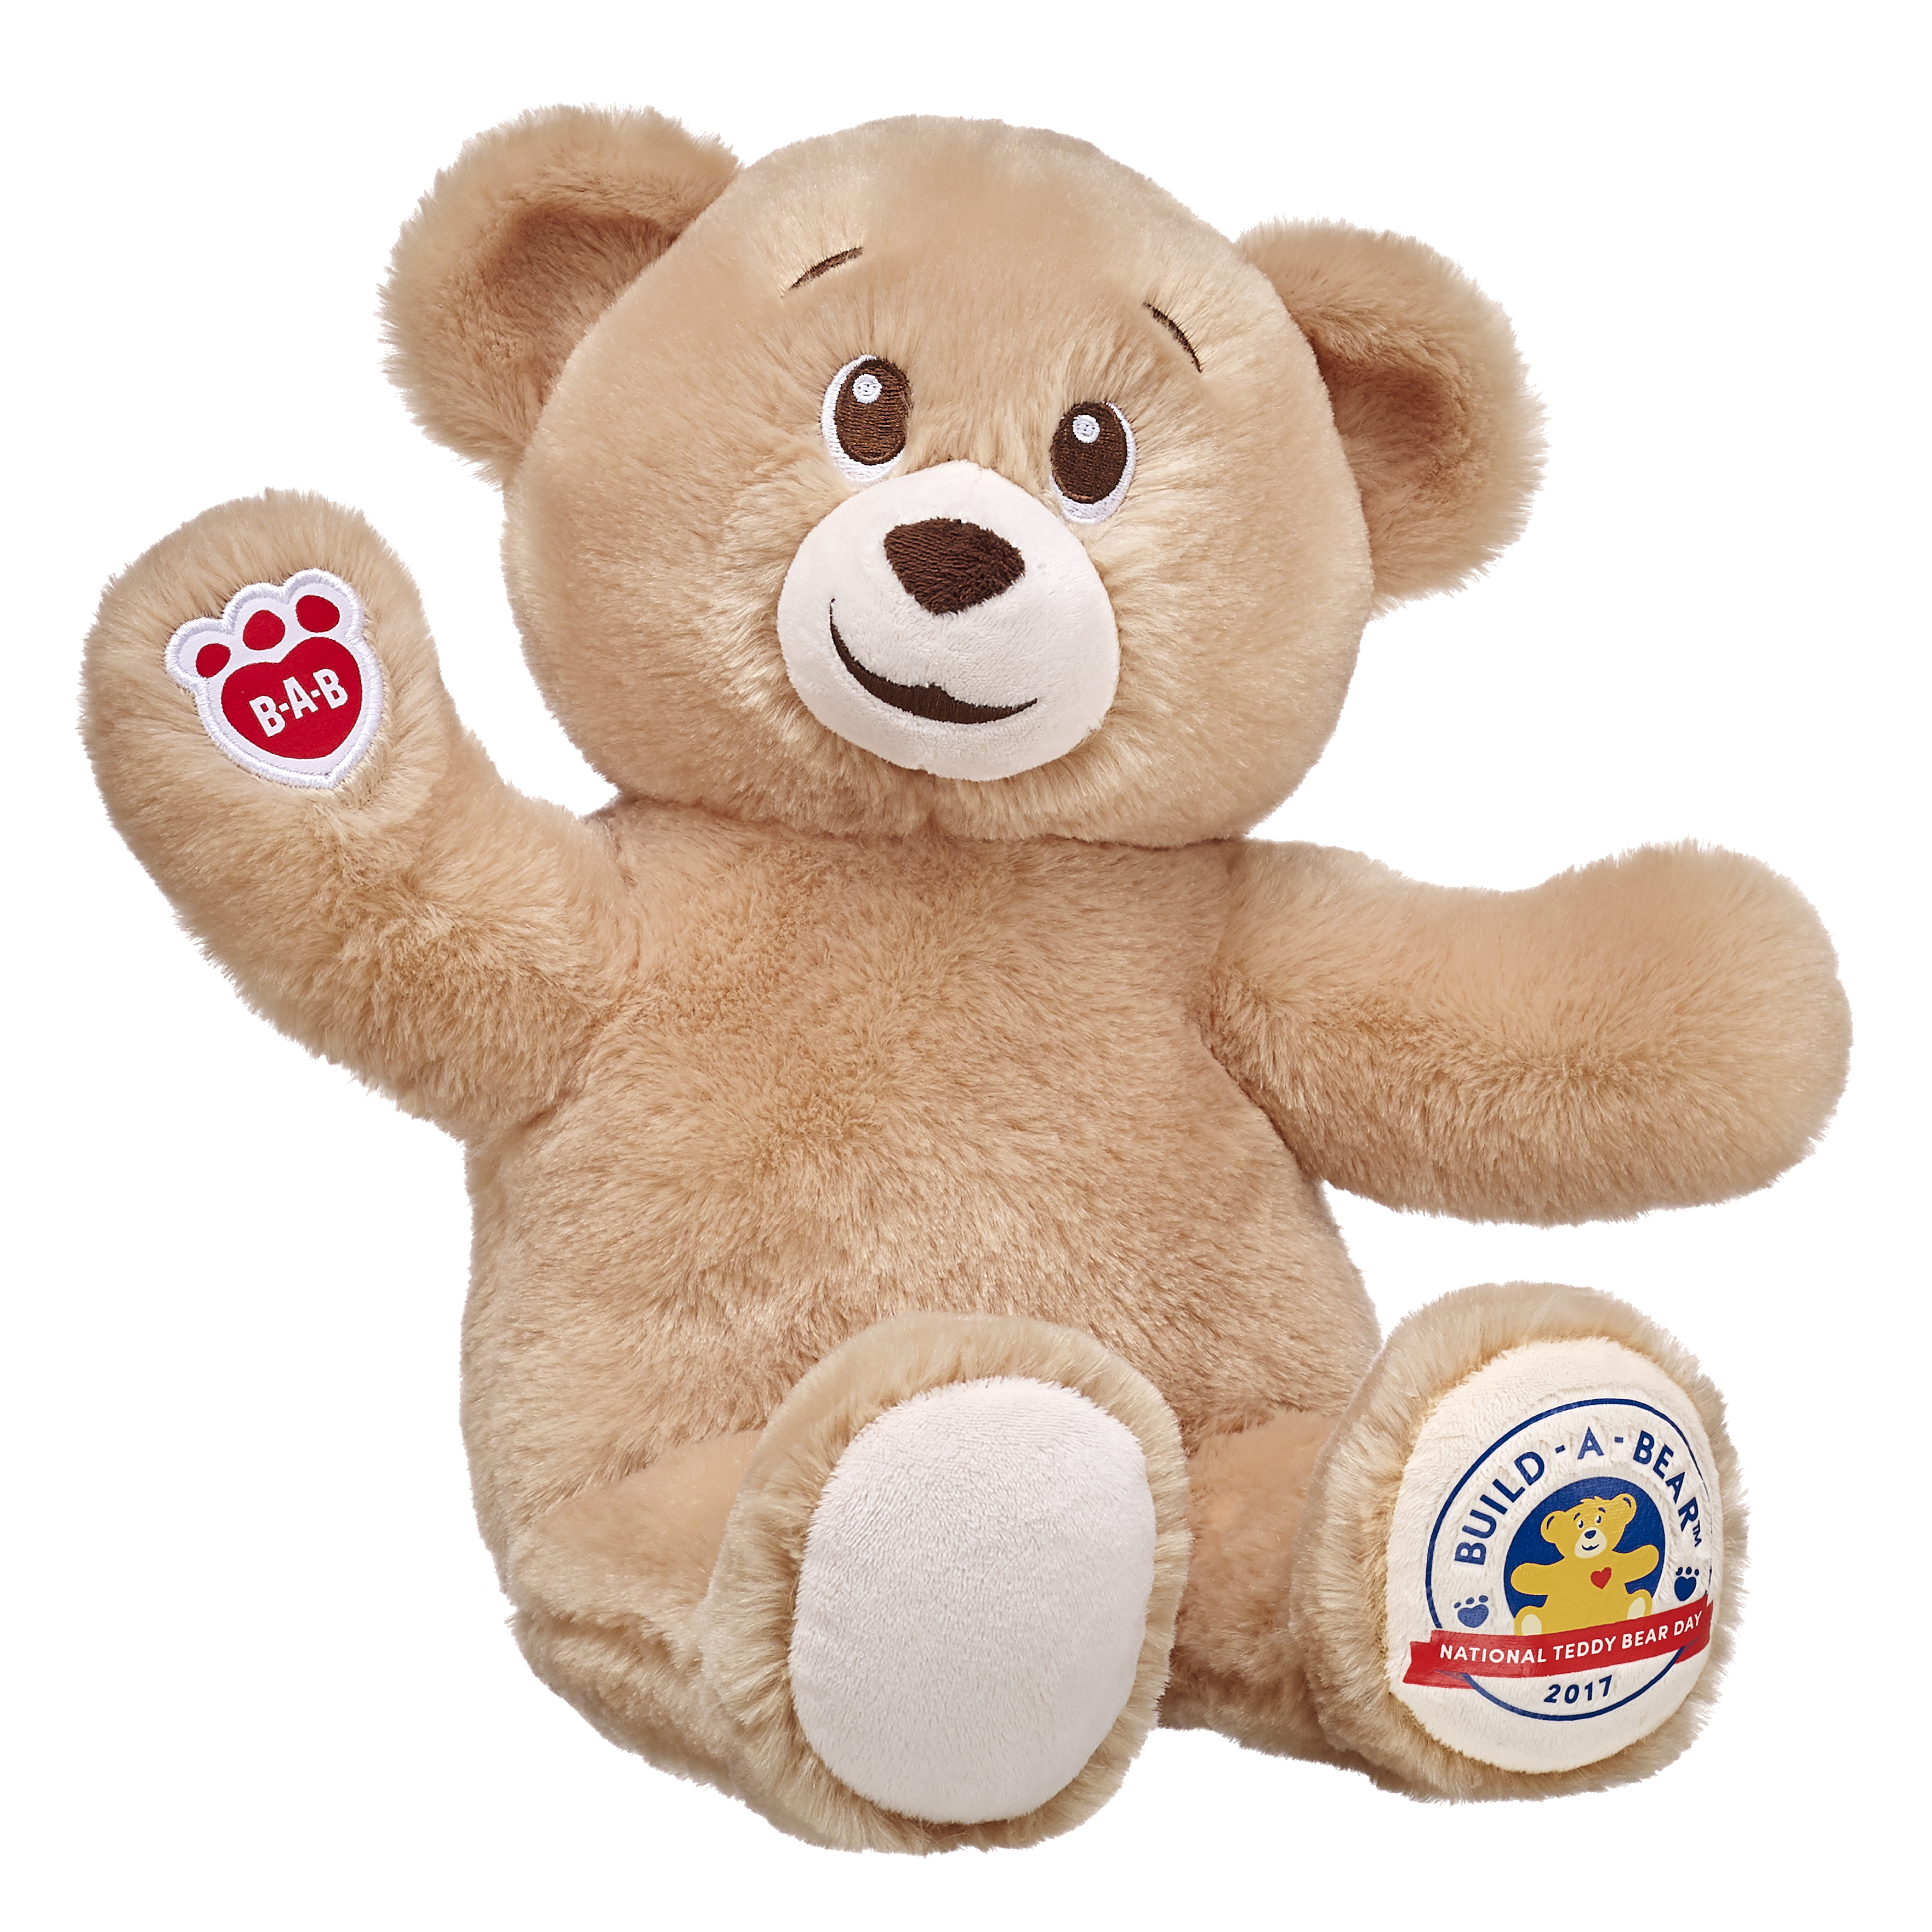 Плюшевый медведь по английски. Тедди беа. Плюшевые игрушки build a Bear. Плюшевый мишка без фона. Teddy Bear игрушка.